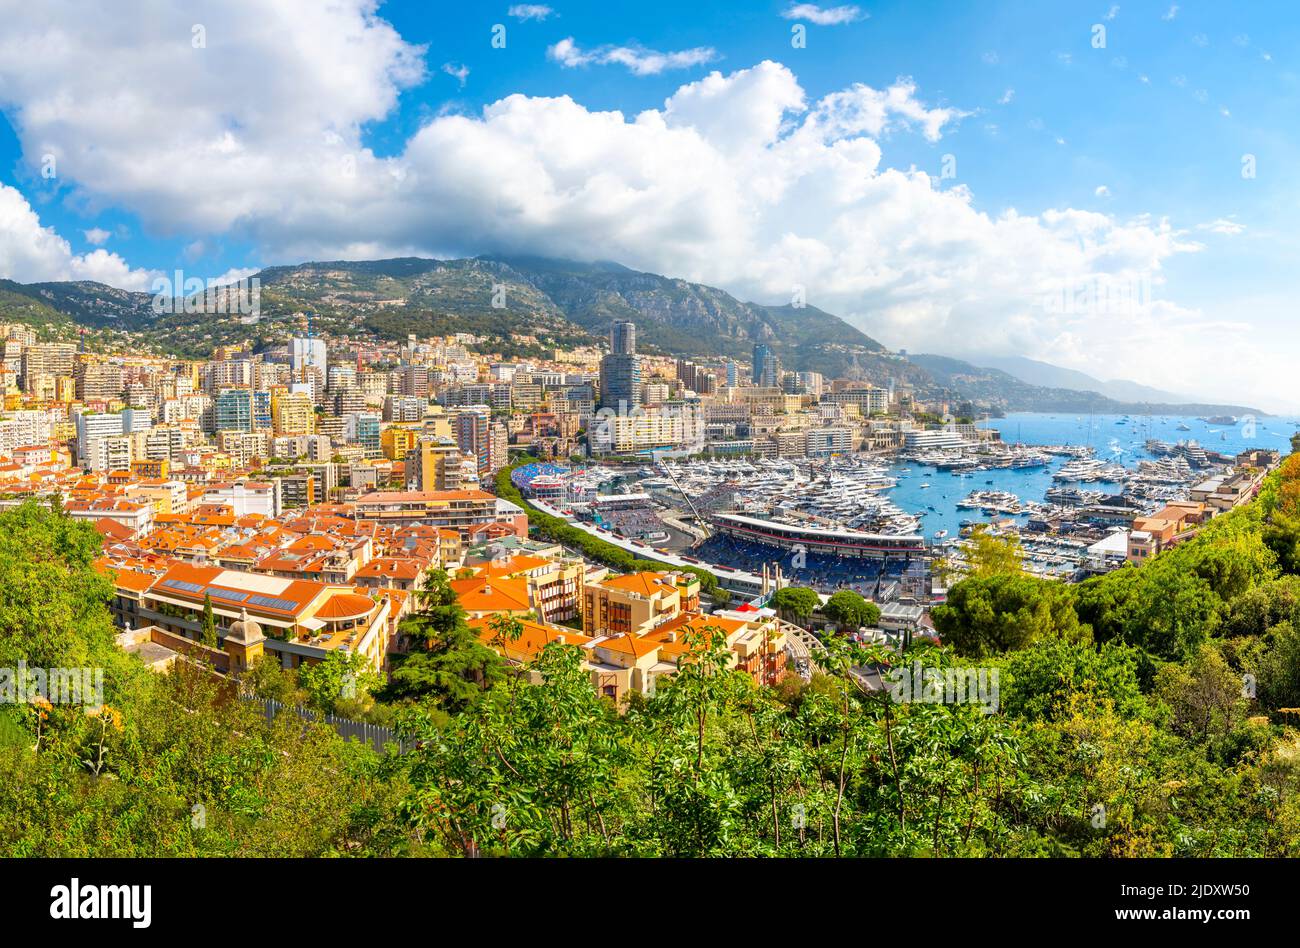 Blick auf den geschäftigen Hafen, die Stadt, die Berge und die gefüllten Tribünen während des Formel-1-Grand-Prix von Monaco in Monte Carlo, Monaco. Stockfoto